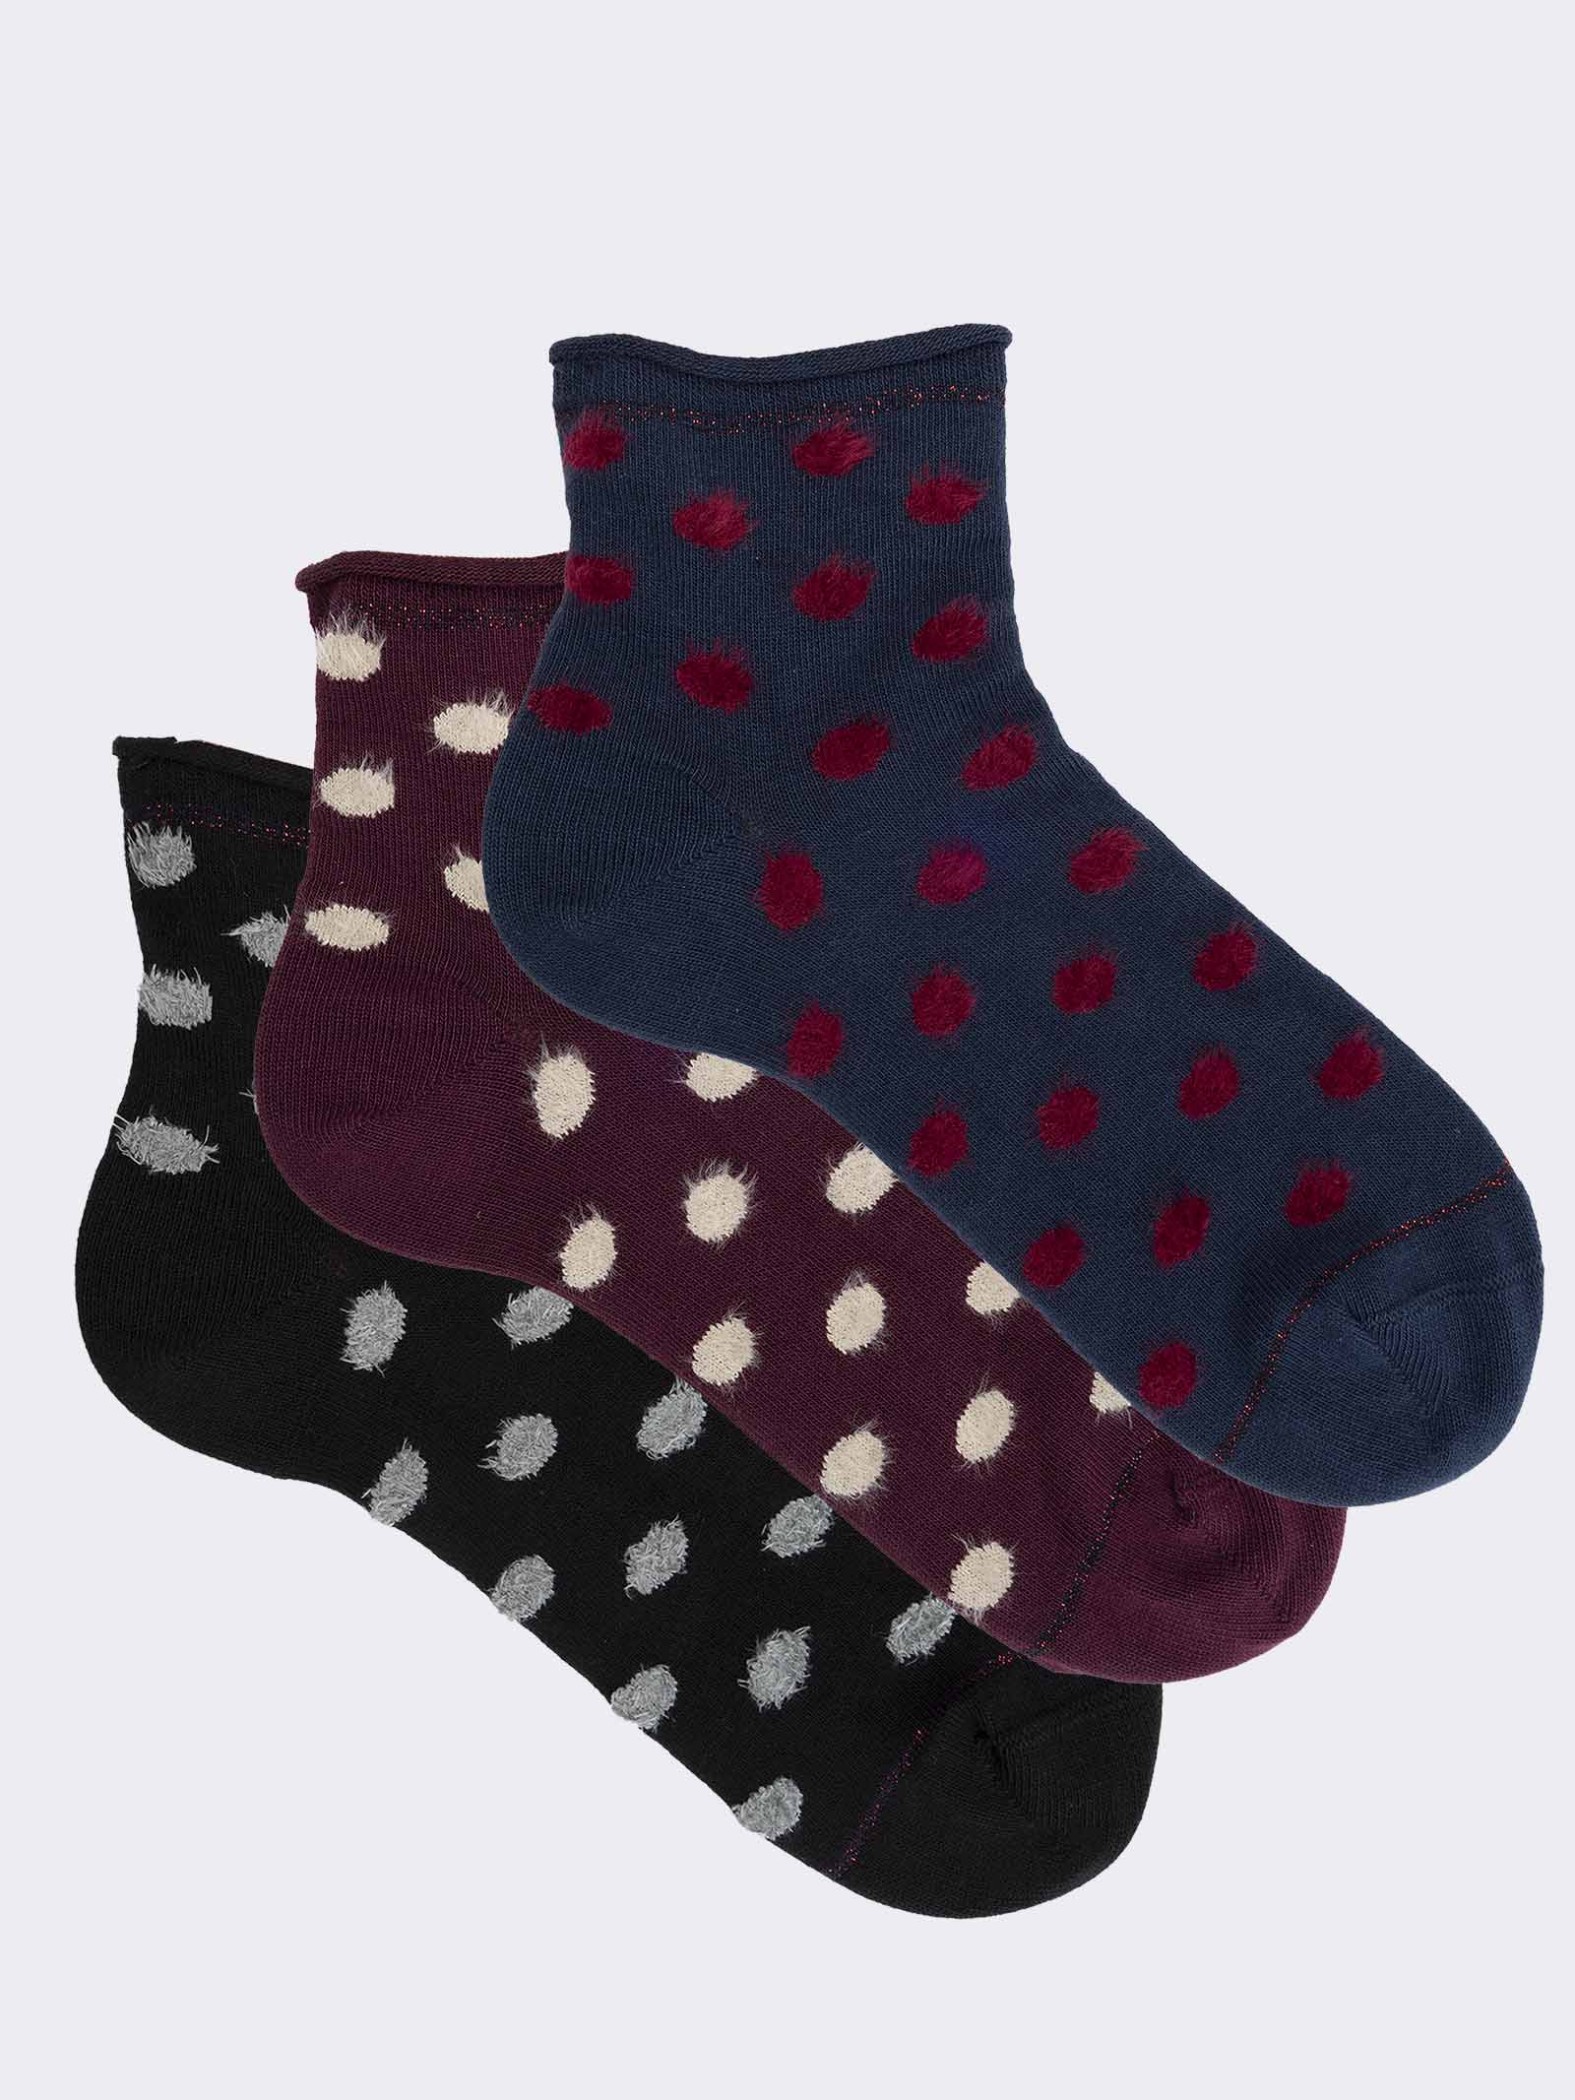 Three polka dot patterned women's socks in warm cotton